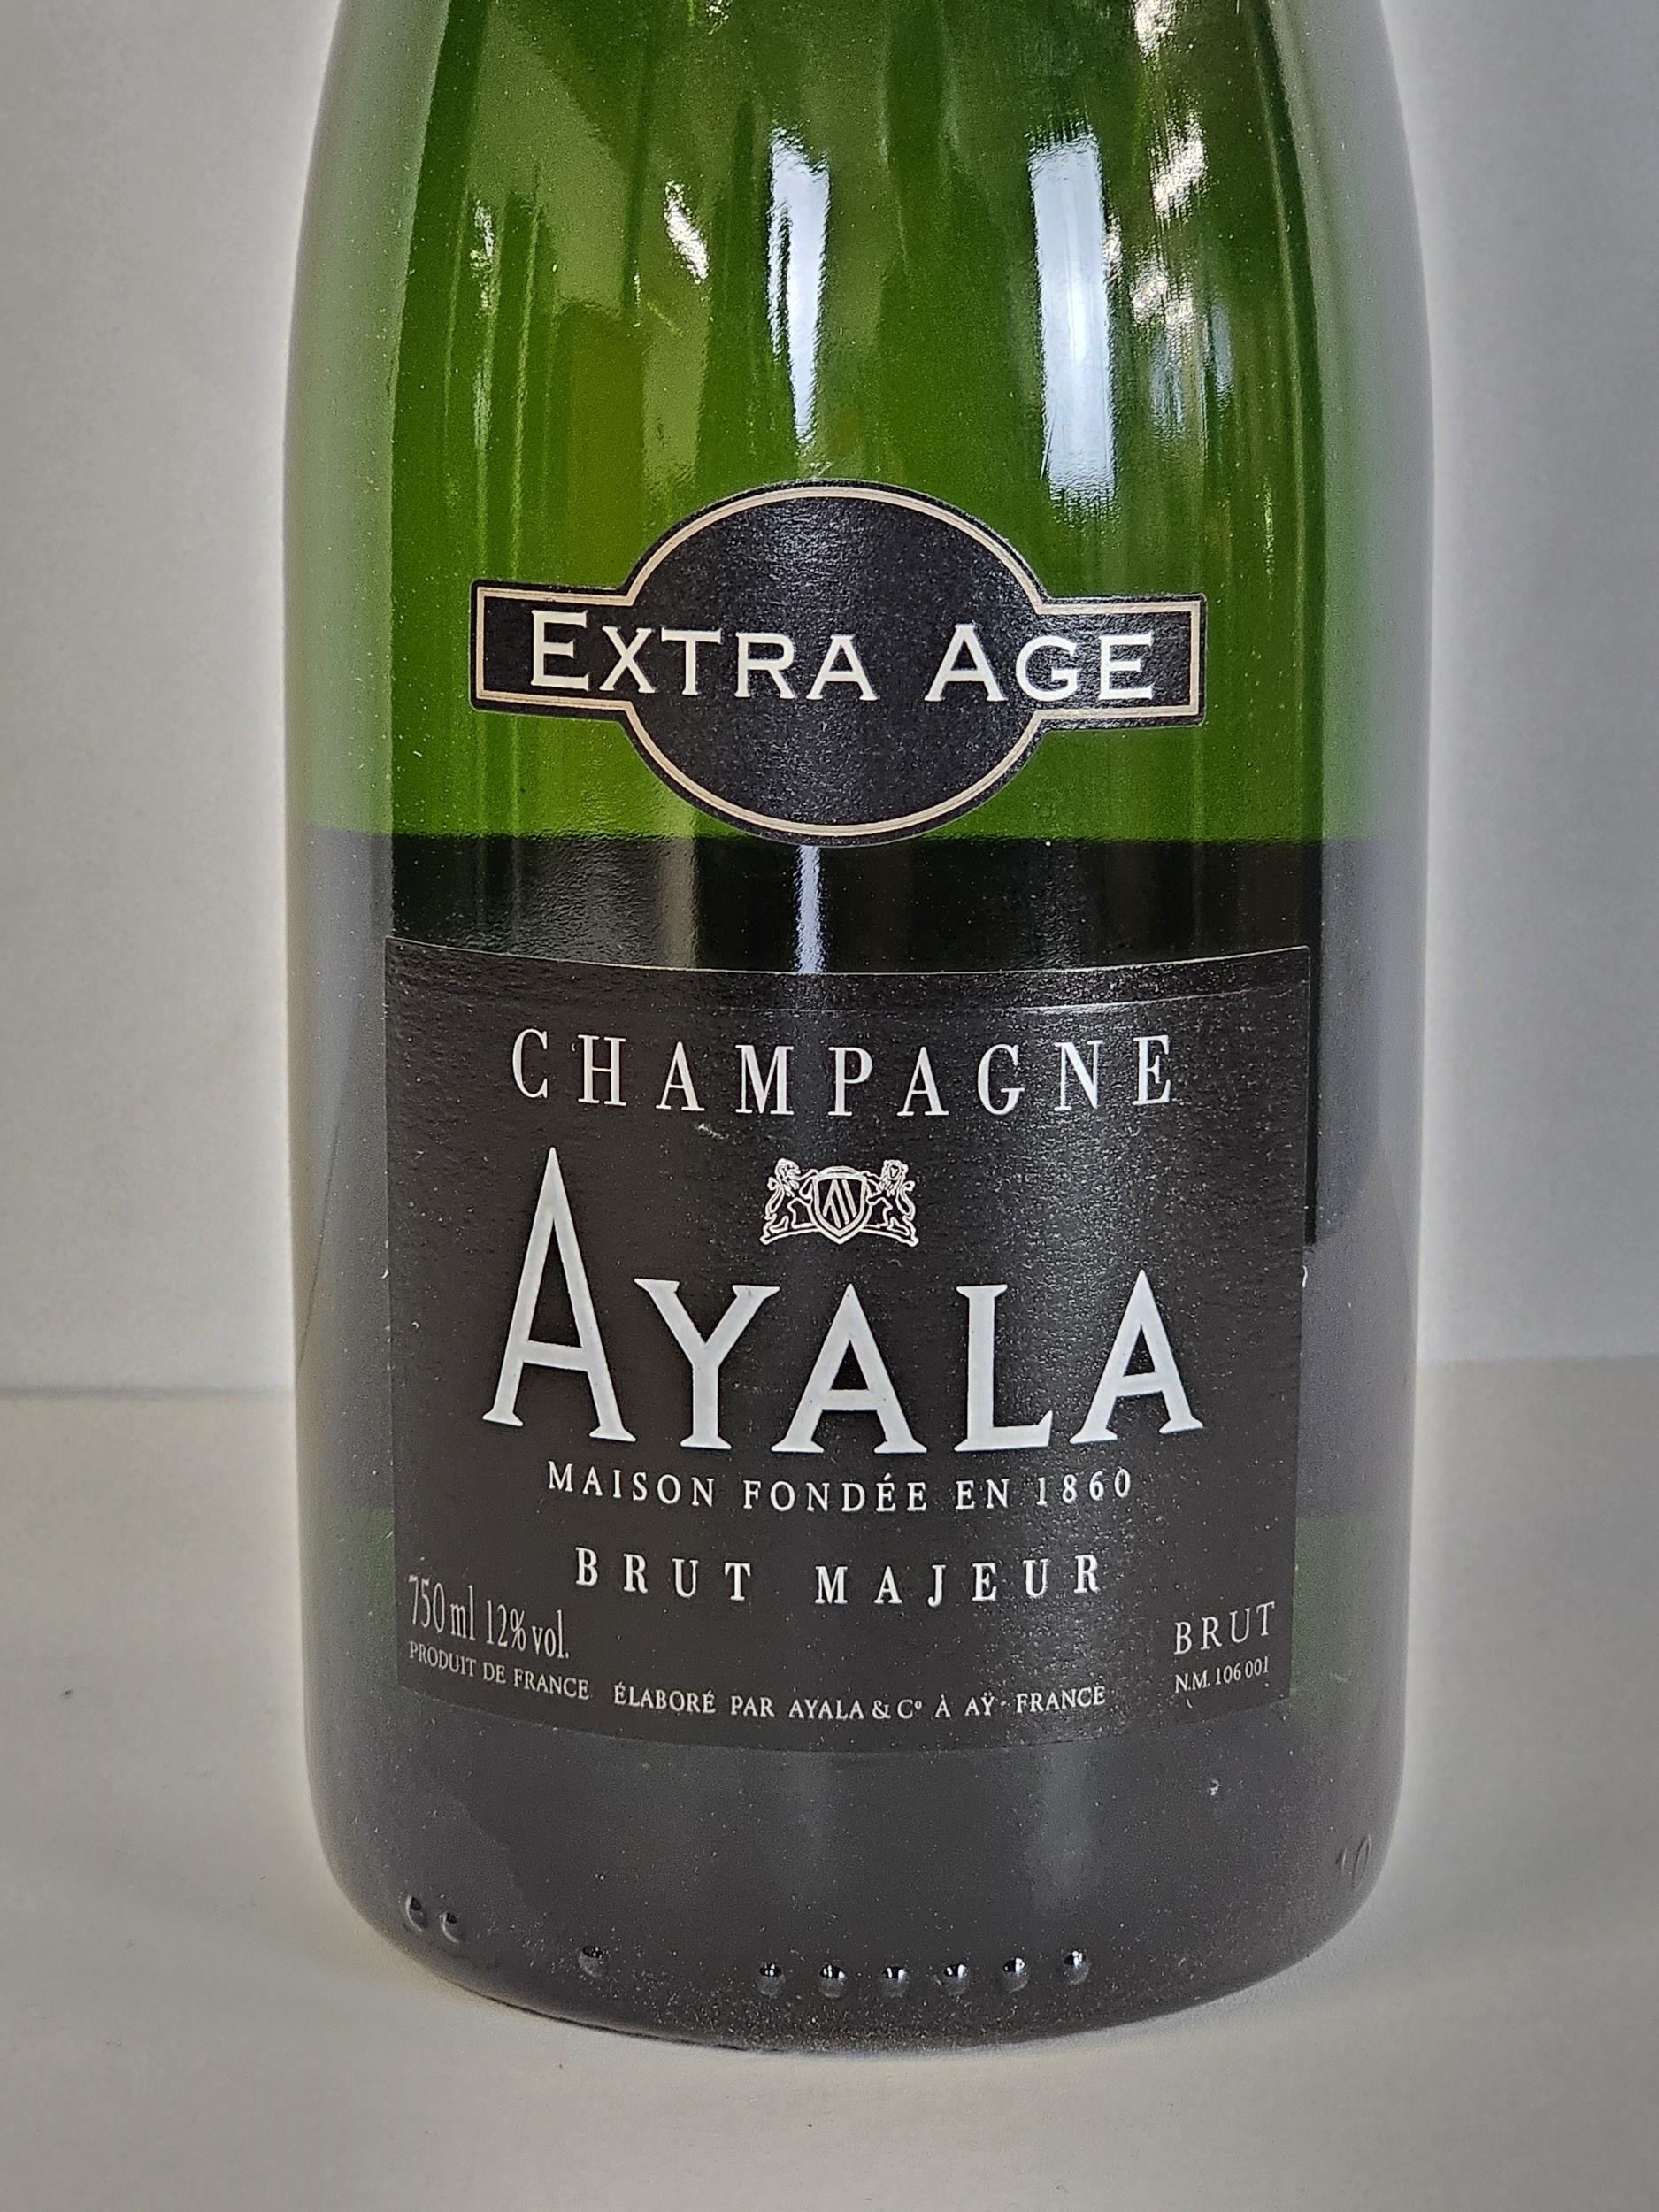 Ayala Brut Majeur Champagne, France. 6 x 75cl bottles - Image 5 of 5